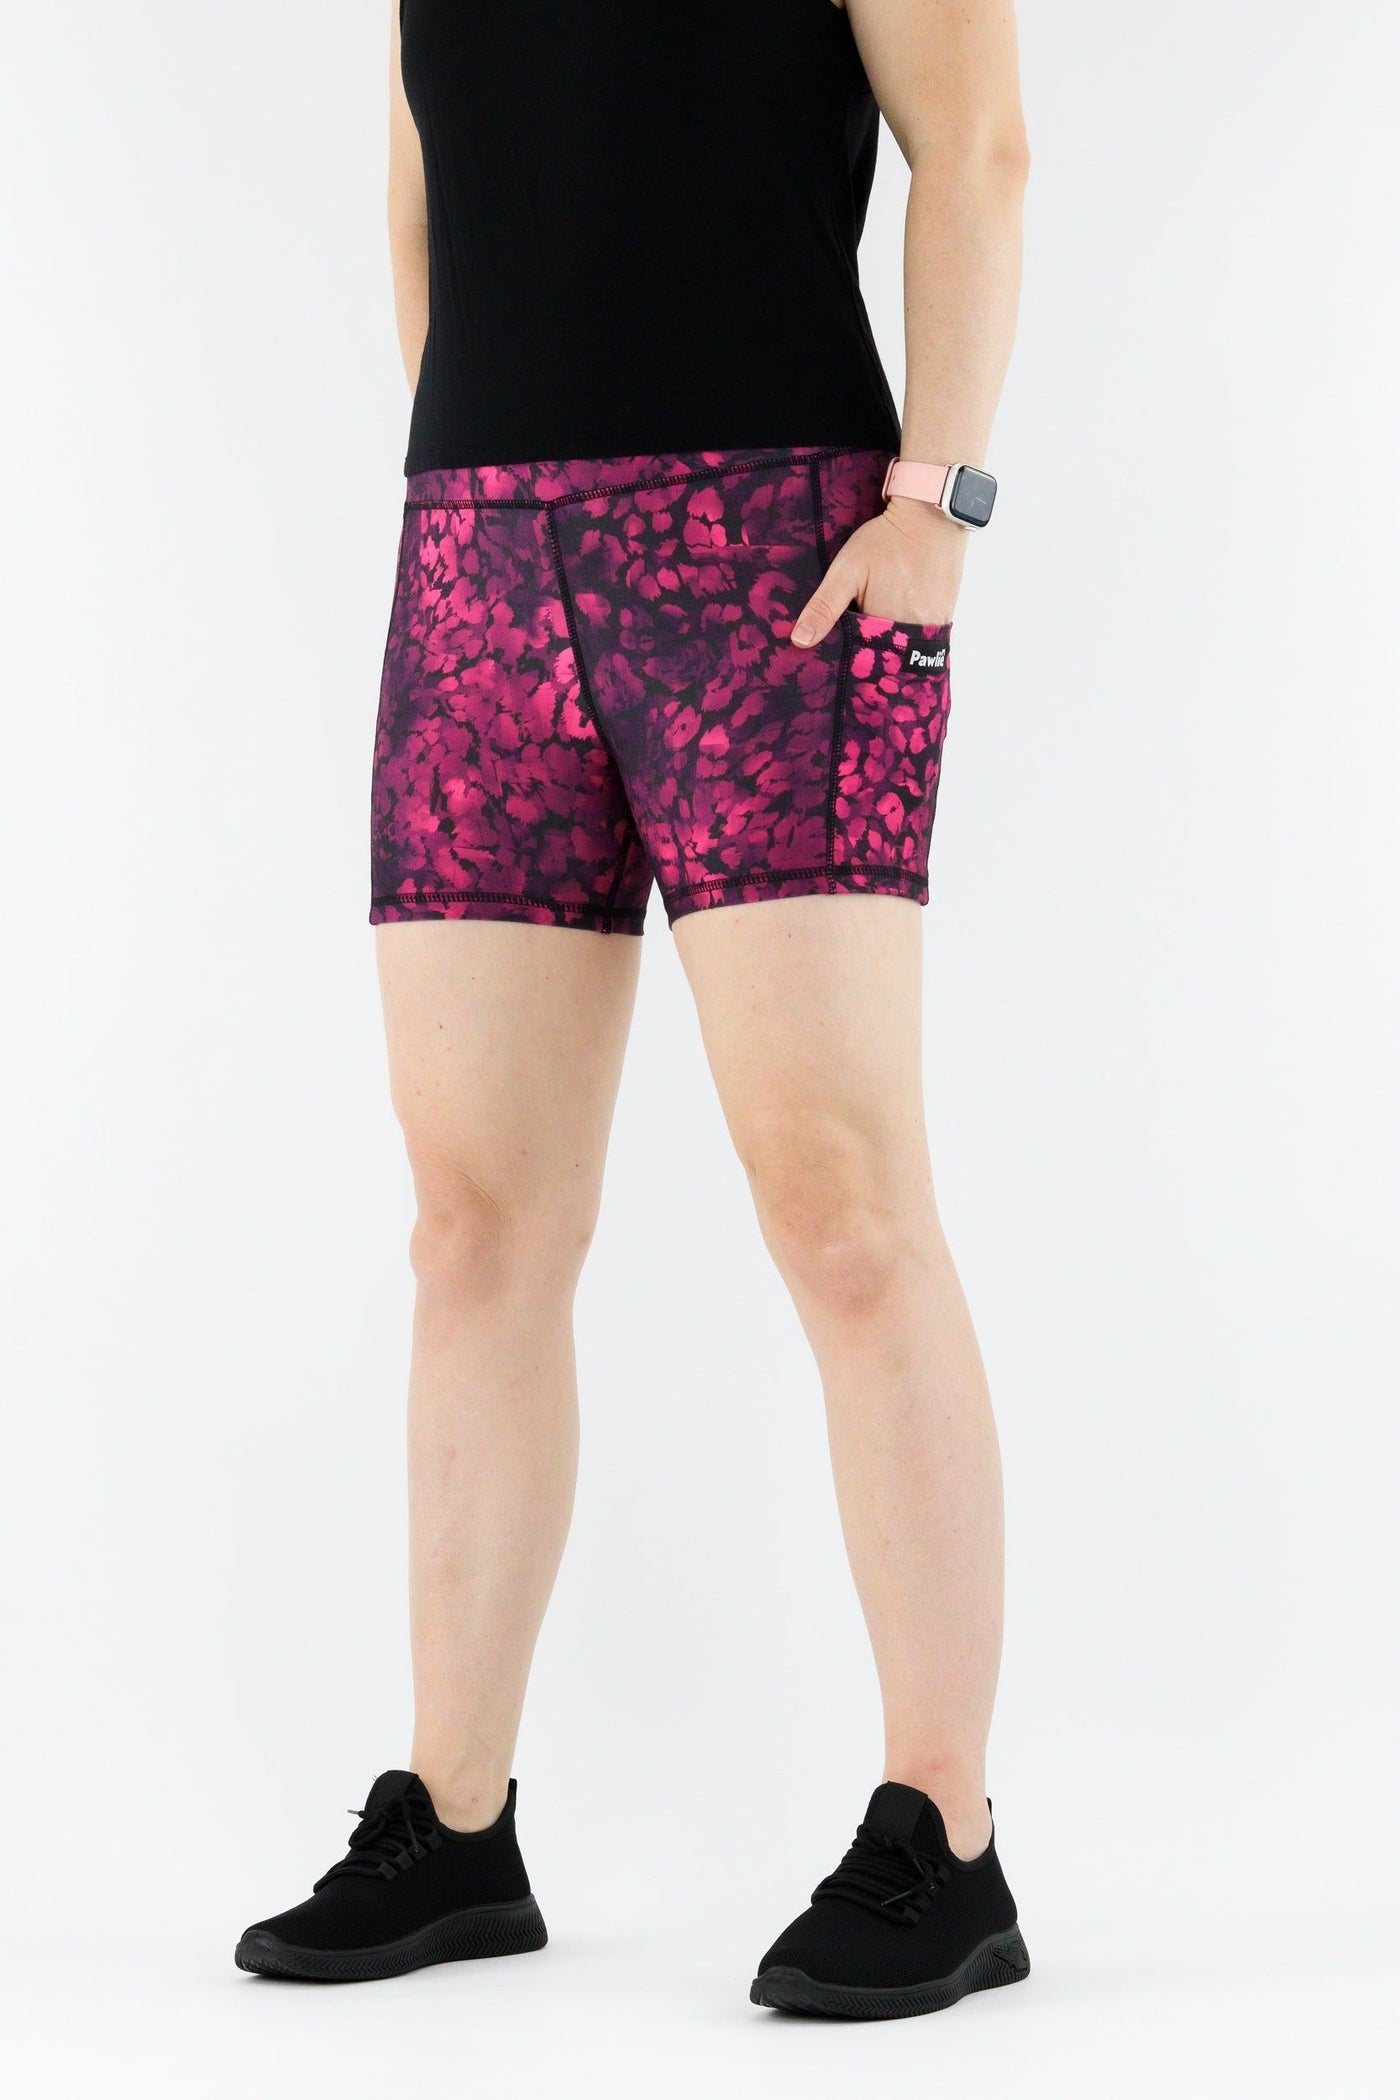 Berry Leopard - Hybrid 1.0 - Leg Pockets - Shorty Shorts Hybrid Shorts Pawlie   